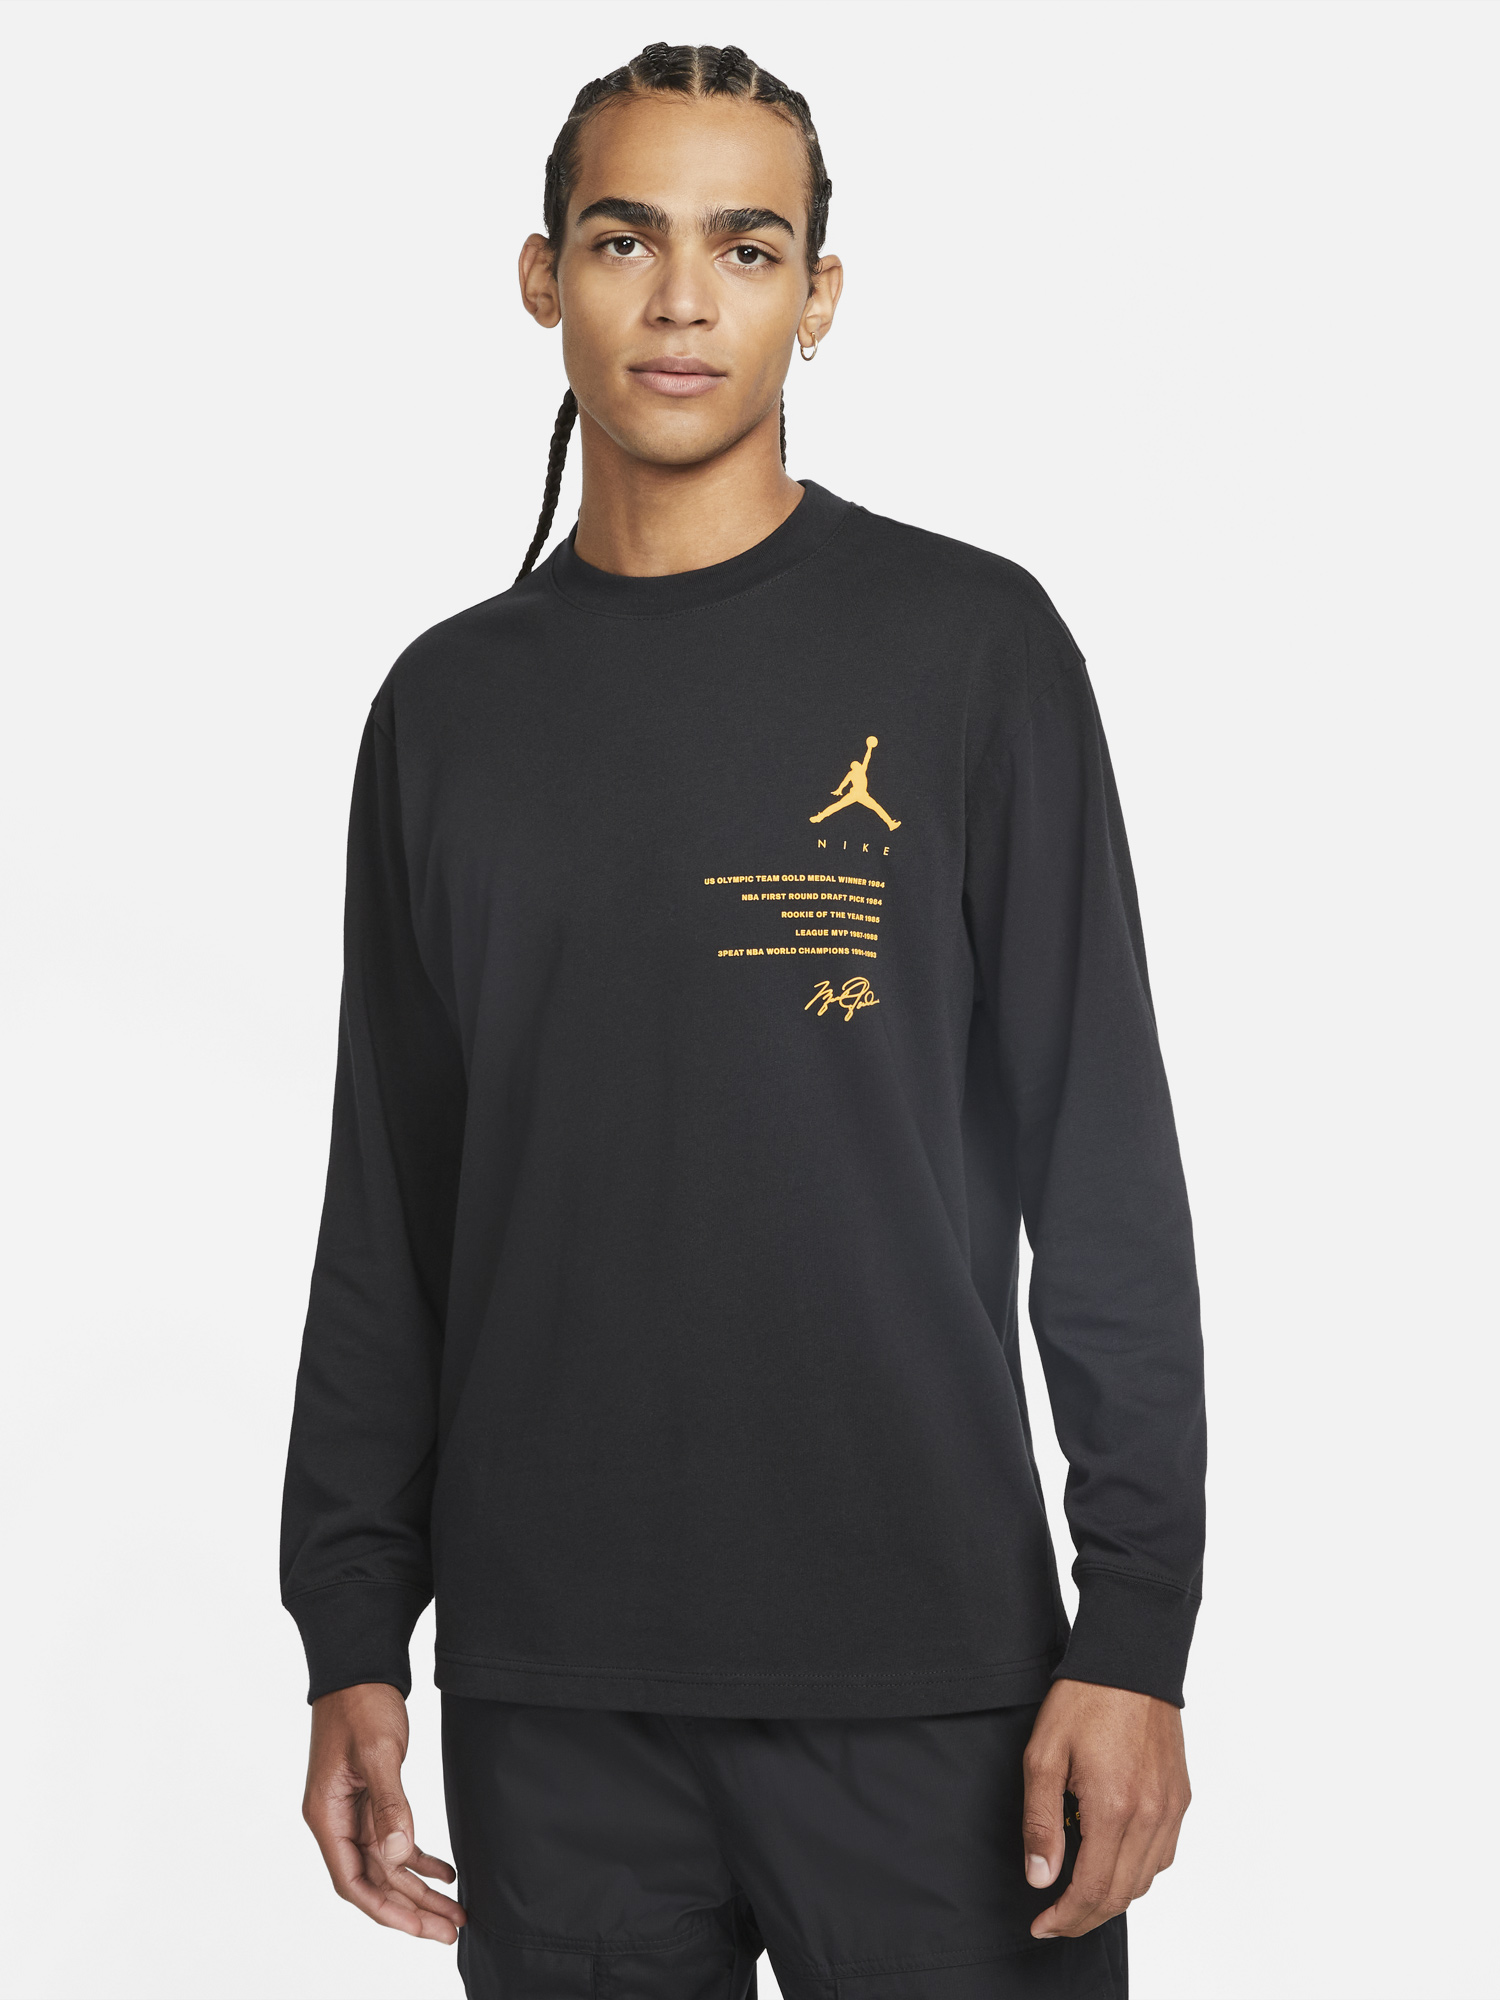 air-jordan-12-royalty-long-sleeve-shirt-1